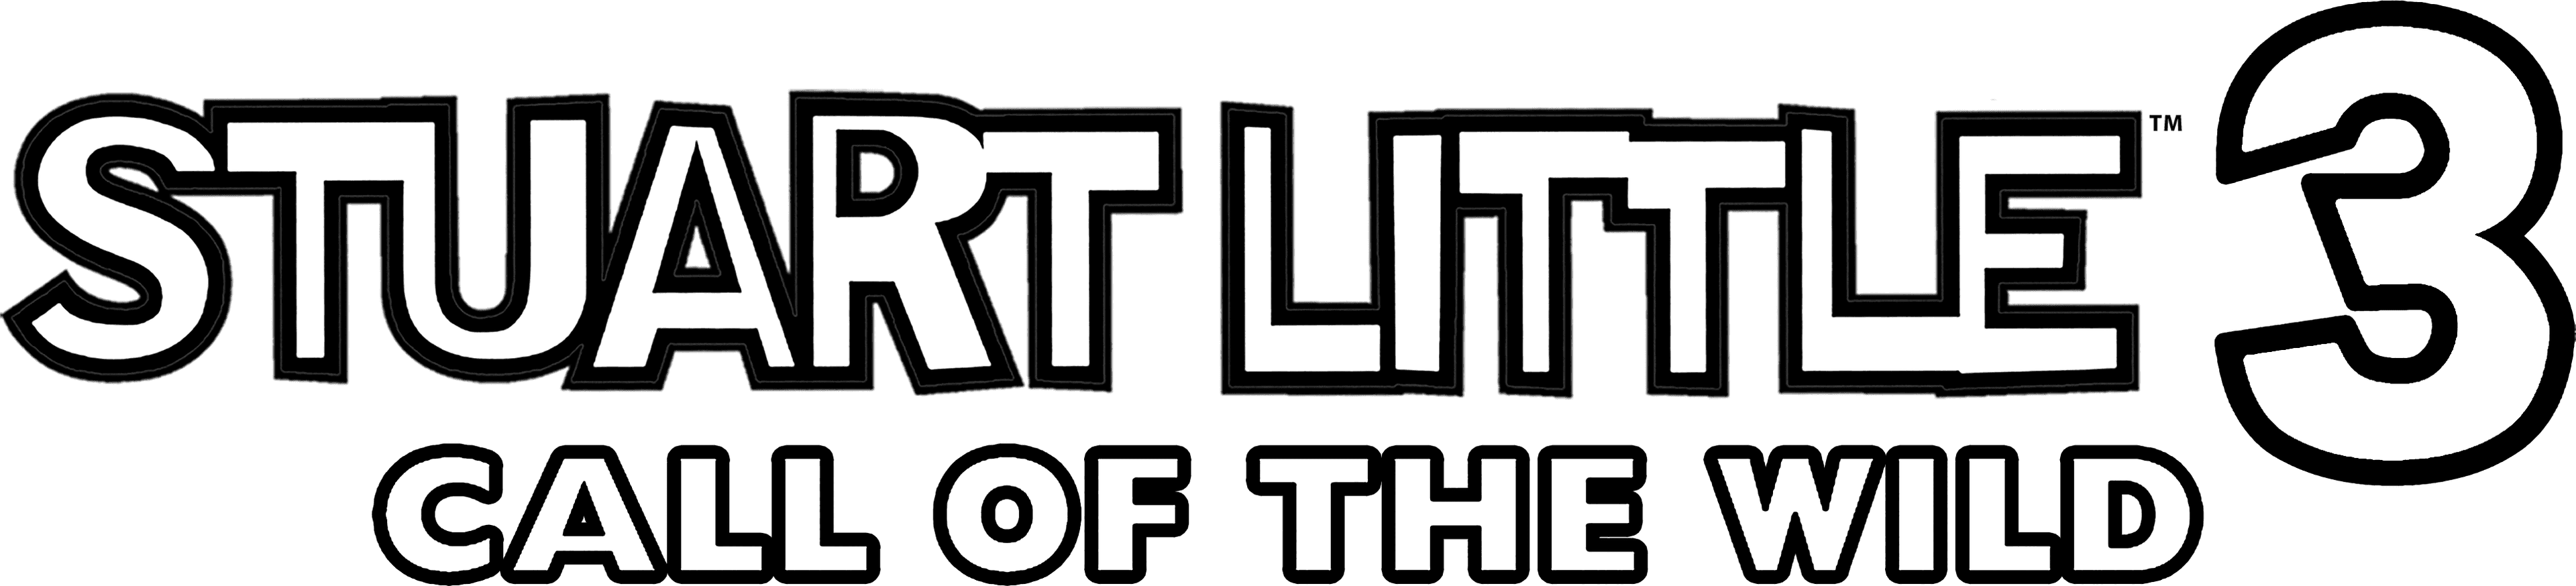 Stuart Little 3: Call of the Wild logo